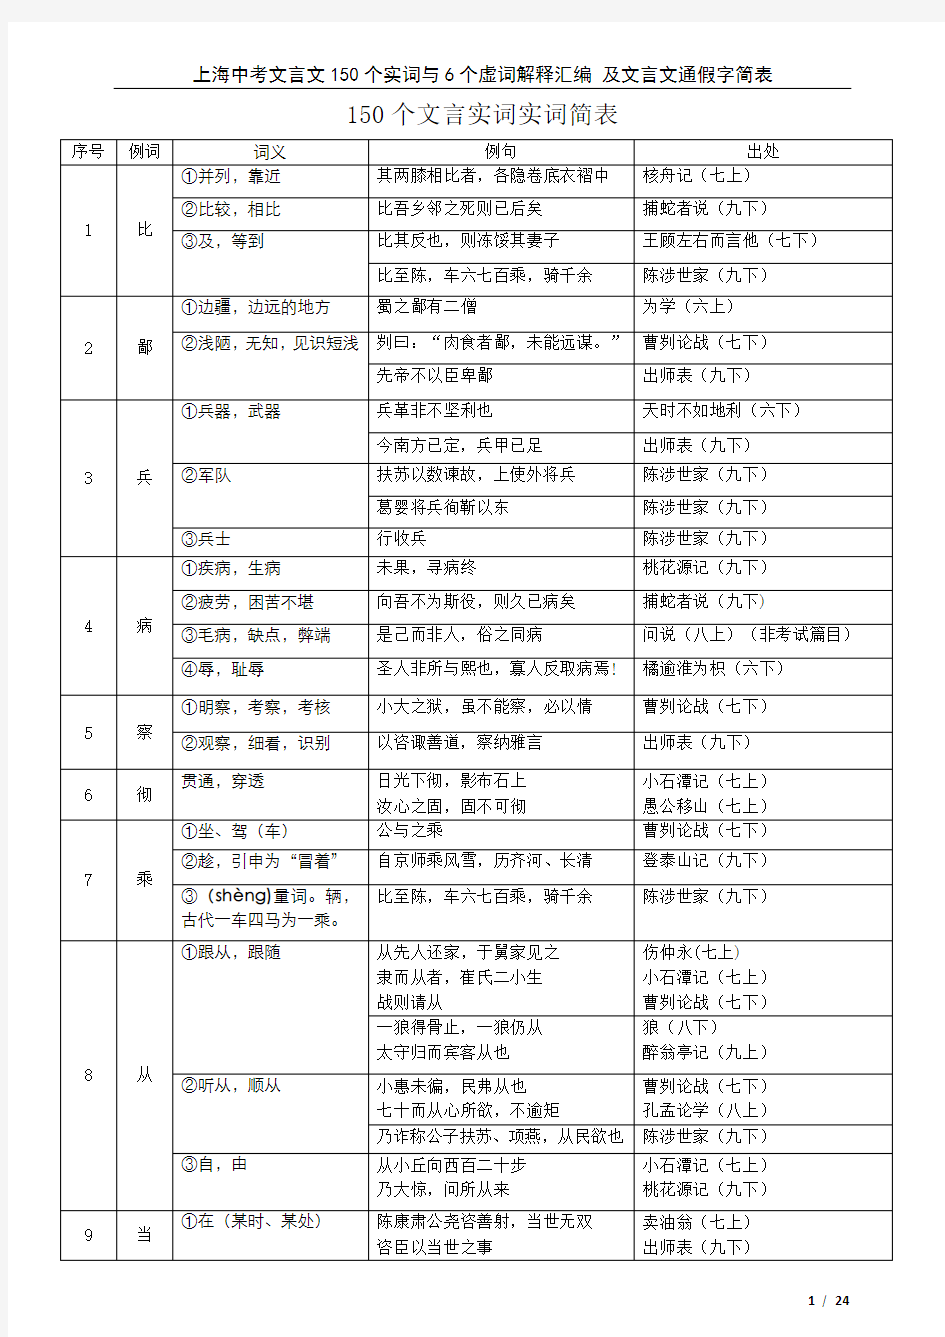 上海中考文言文150个实词6个虚词以及通假字最新201803整理